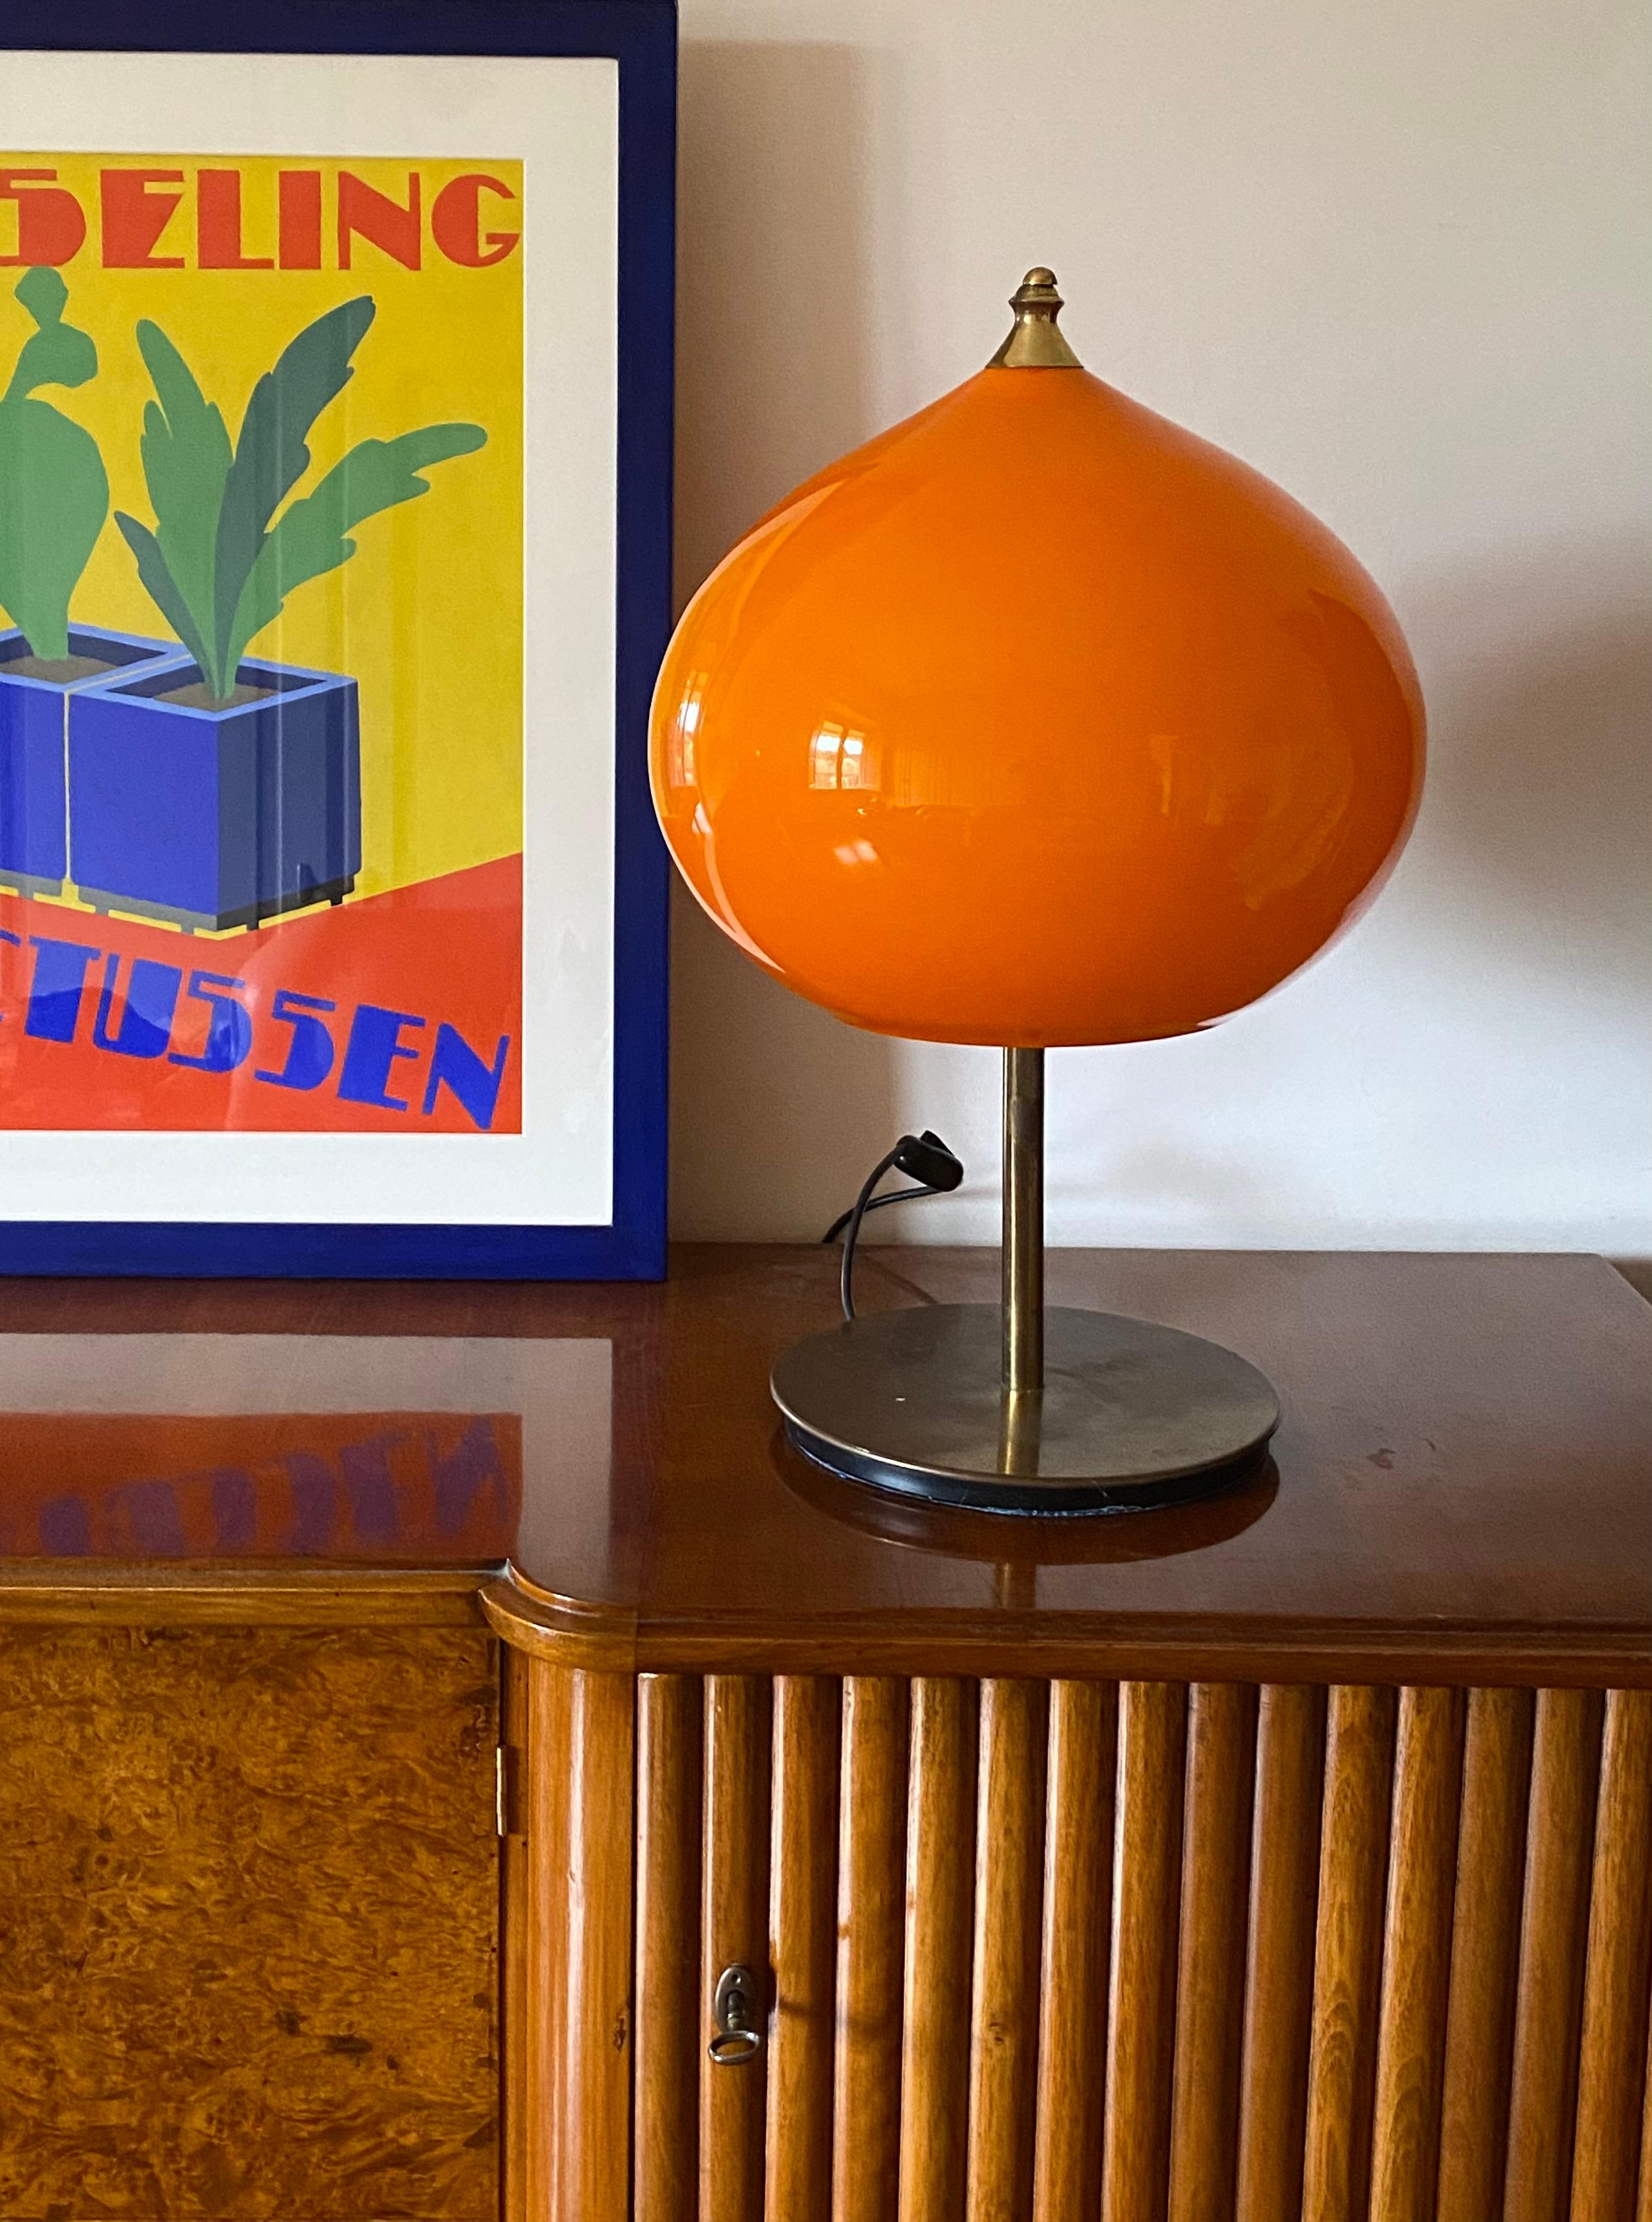 Lampe de table moderne monumentale conçue par Alessandro Pianon

Vistosi Italie, vers 1960

Verre orange de Murano en forme d'oignon 

tige et base en laiton

53 cm H - diam. 27 cm

Ampoules triples. Prise européenne.

État : excellent, sans défaut